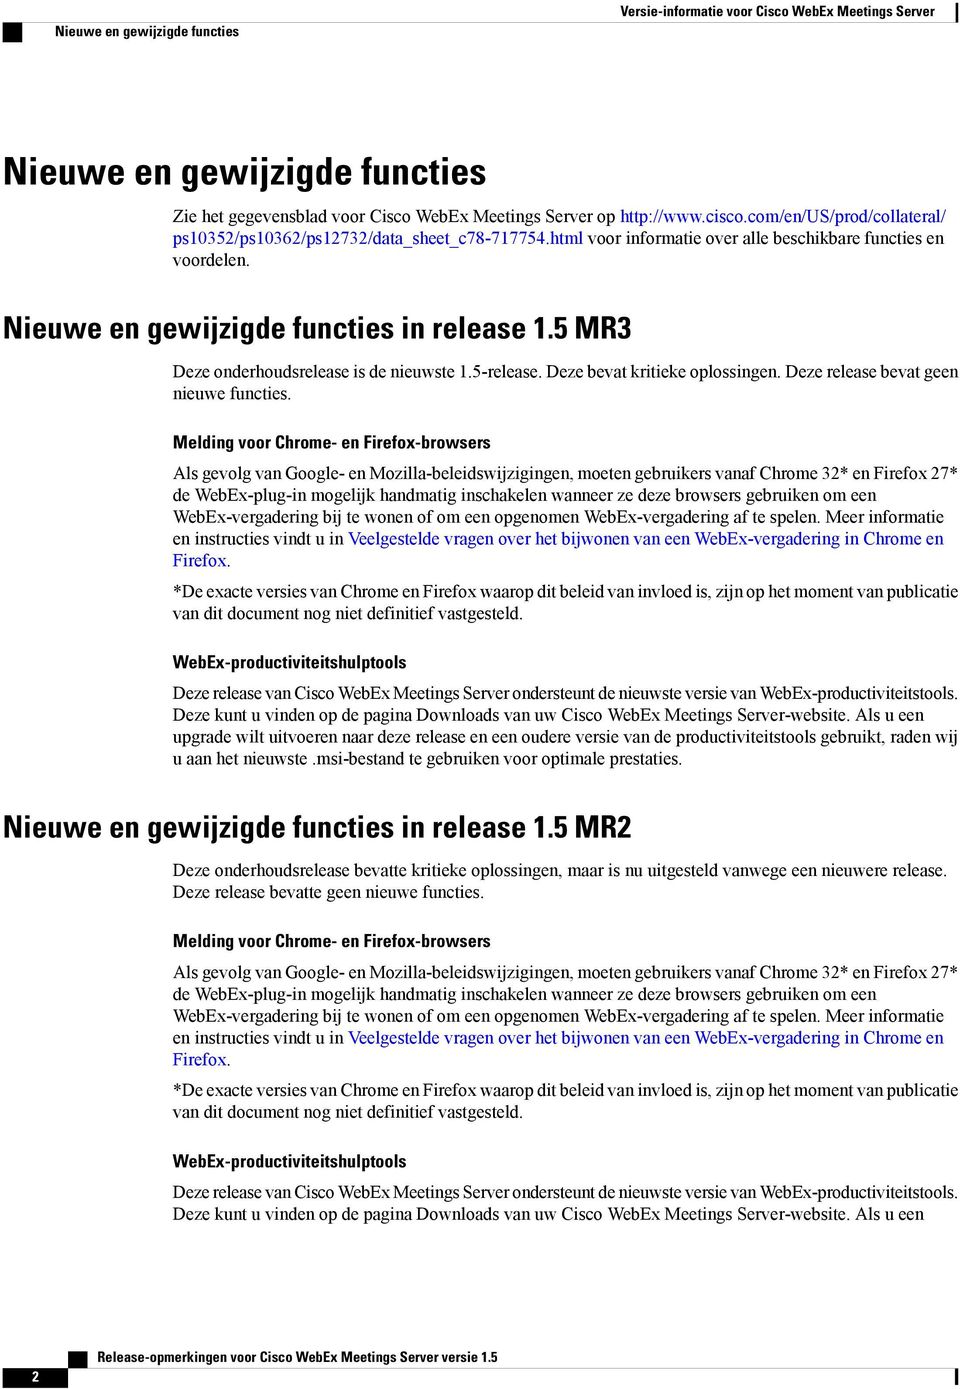 5 MR Deze onderhoudsrelease is de nieuwste 1.5-release. Deze bevat kritieke oplossingen. Deze release bevat geen nieuwe functies.